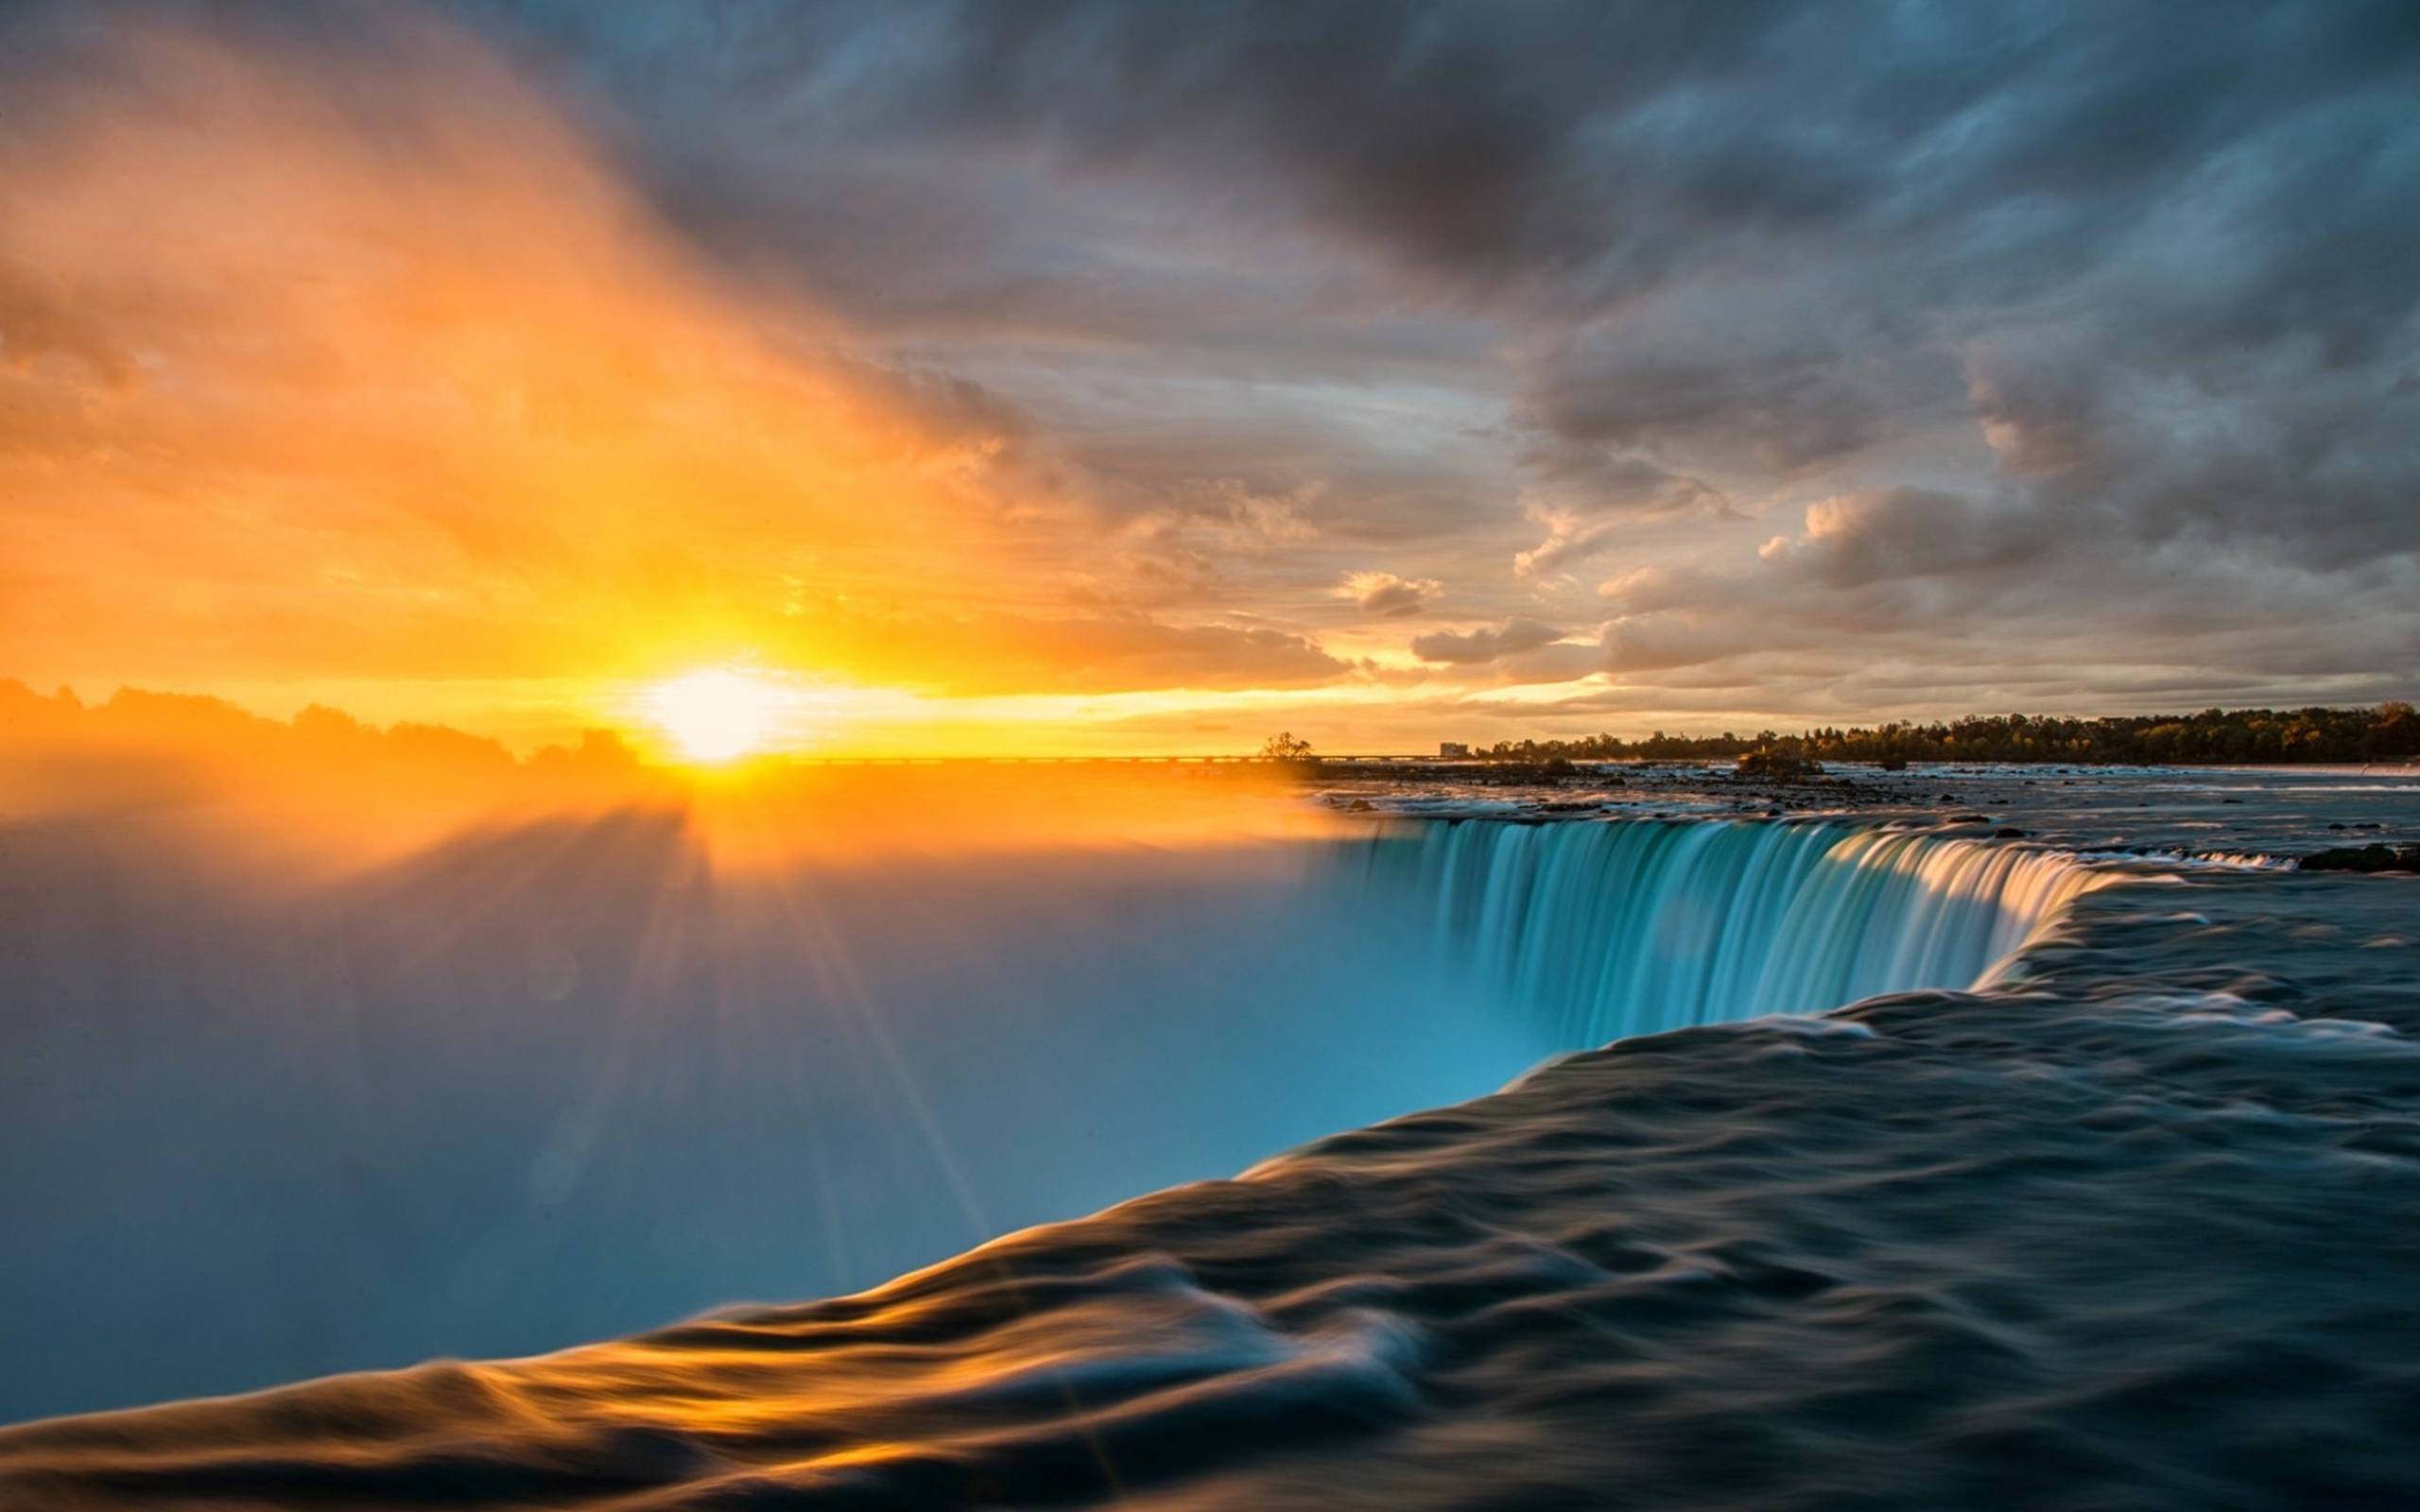 Обои на телефон самые красивые в мире. Ниагарский водопад Онтарио. Ниагарский водопад Восход. Ниагарский водопад на закате. Ниагарский водопад солнце.